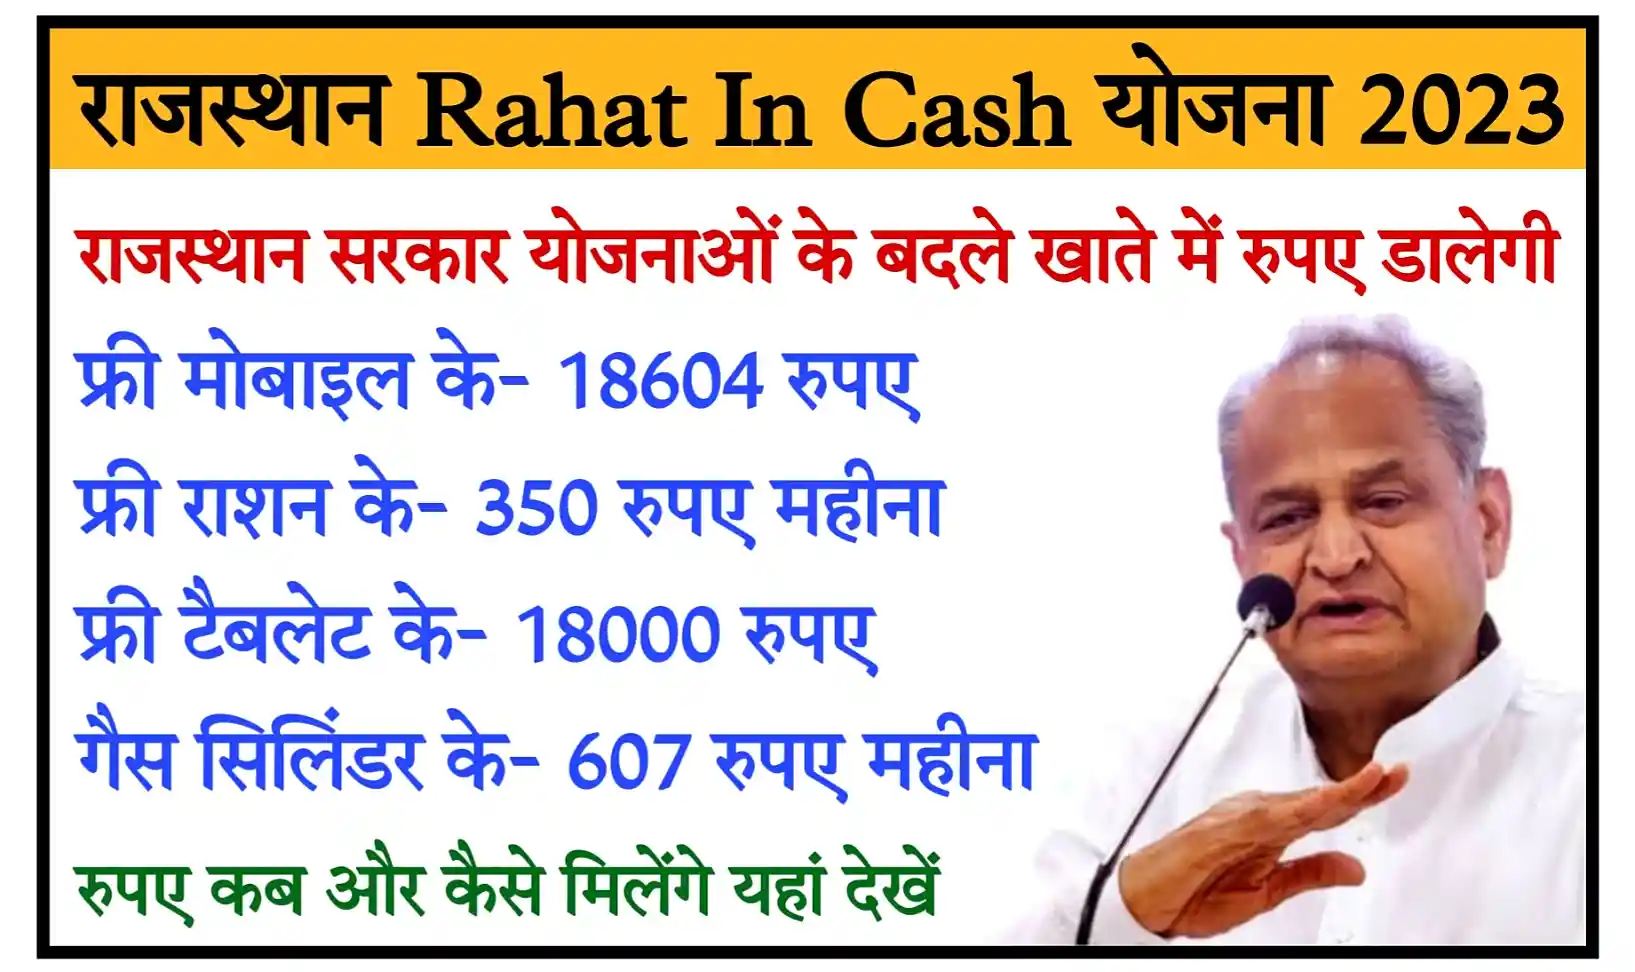 Rajasthan Rahat In Cash Yojana 2023 राजस्थान में अब फ्री मोबाइल, टेबलेट, गैस सिलेंडर योजना के बदले पैसे दिए जाएंगे, संपूर्ण जानकारी देखें